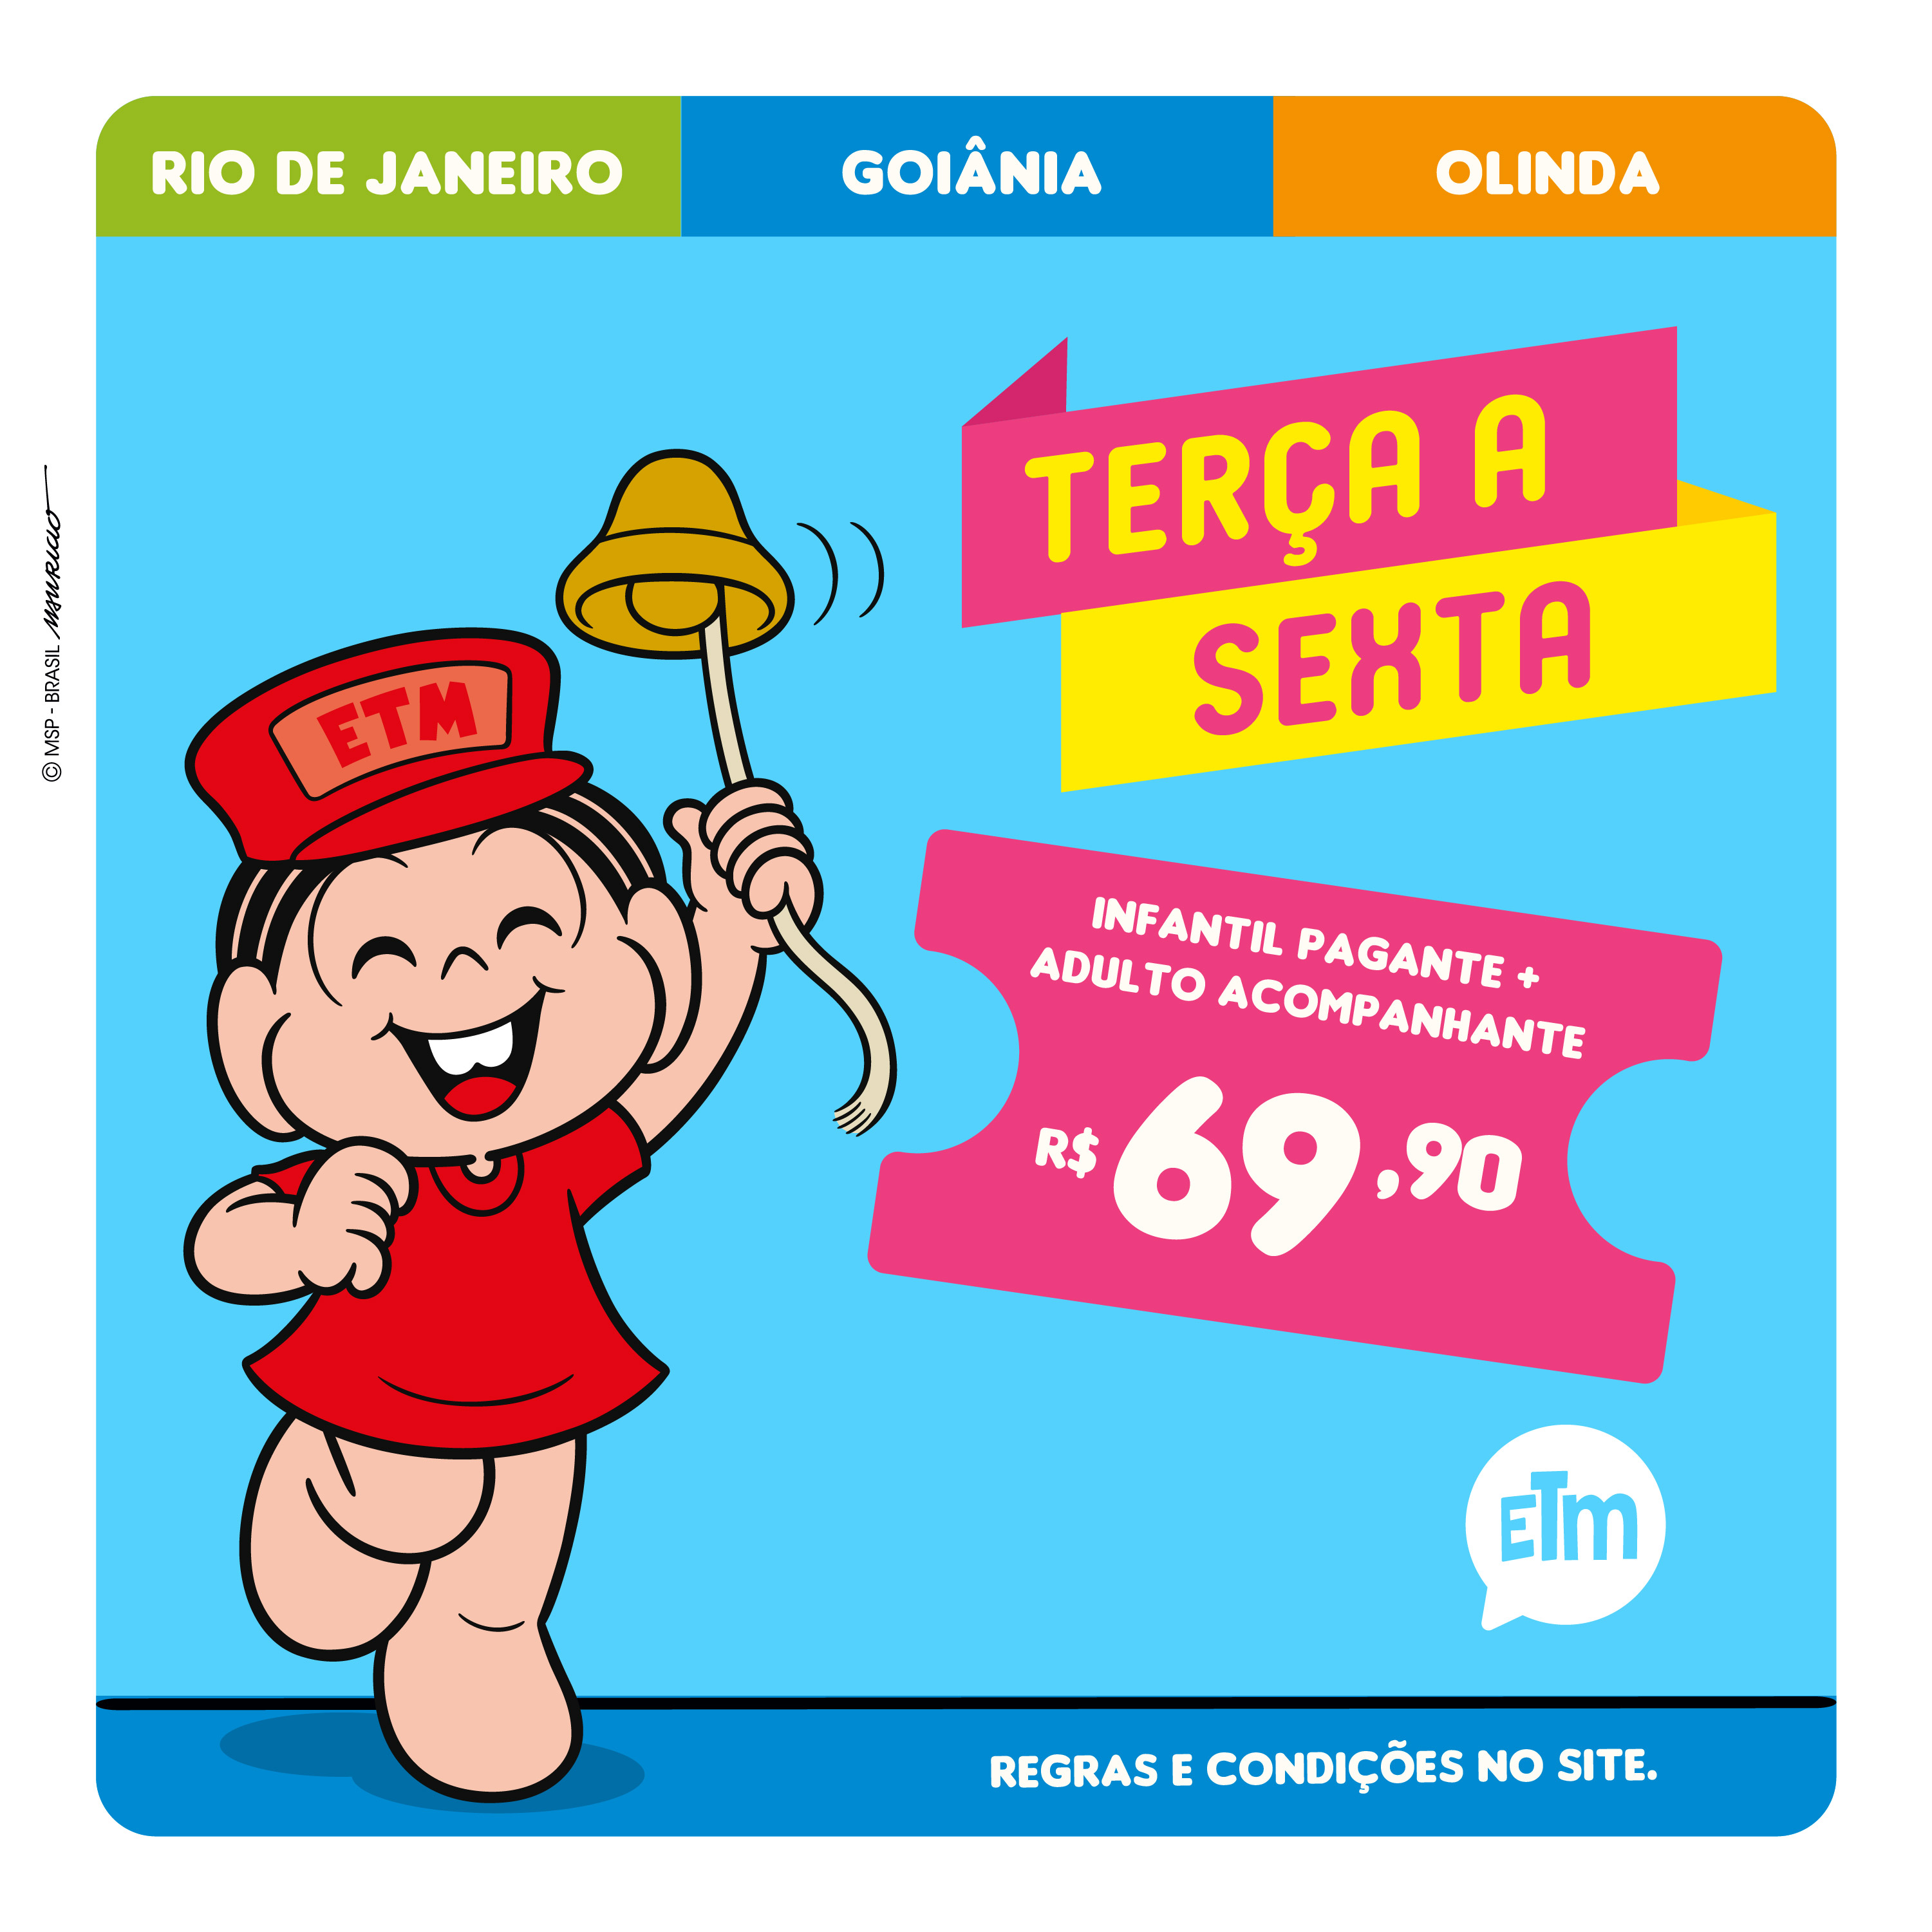  Ingresso Comum terça à sexta (Olinda, Rio de Janeiro e Goiânia) 